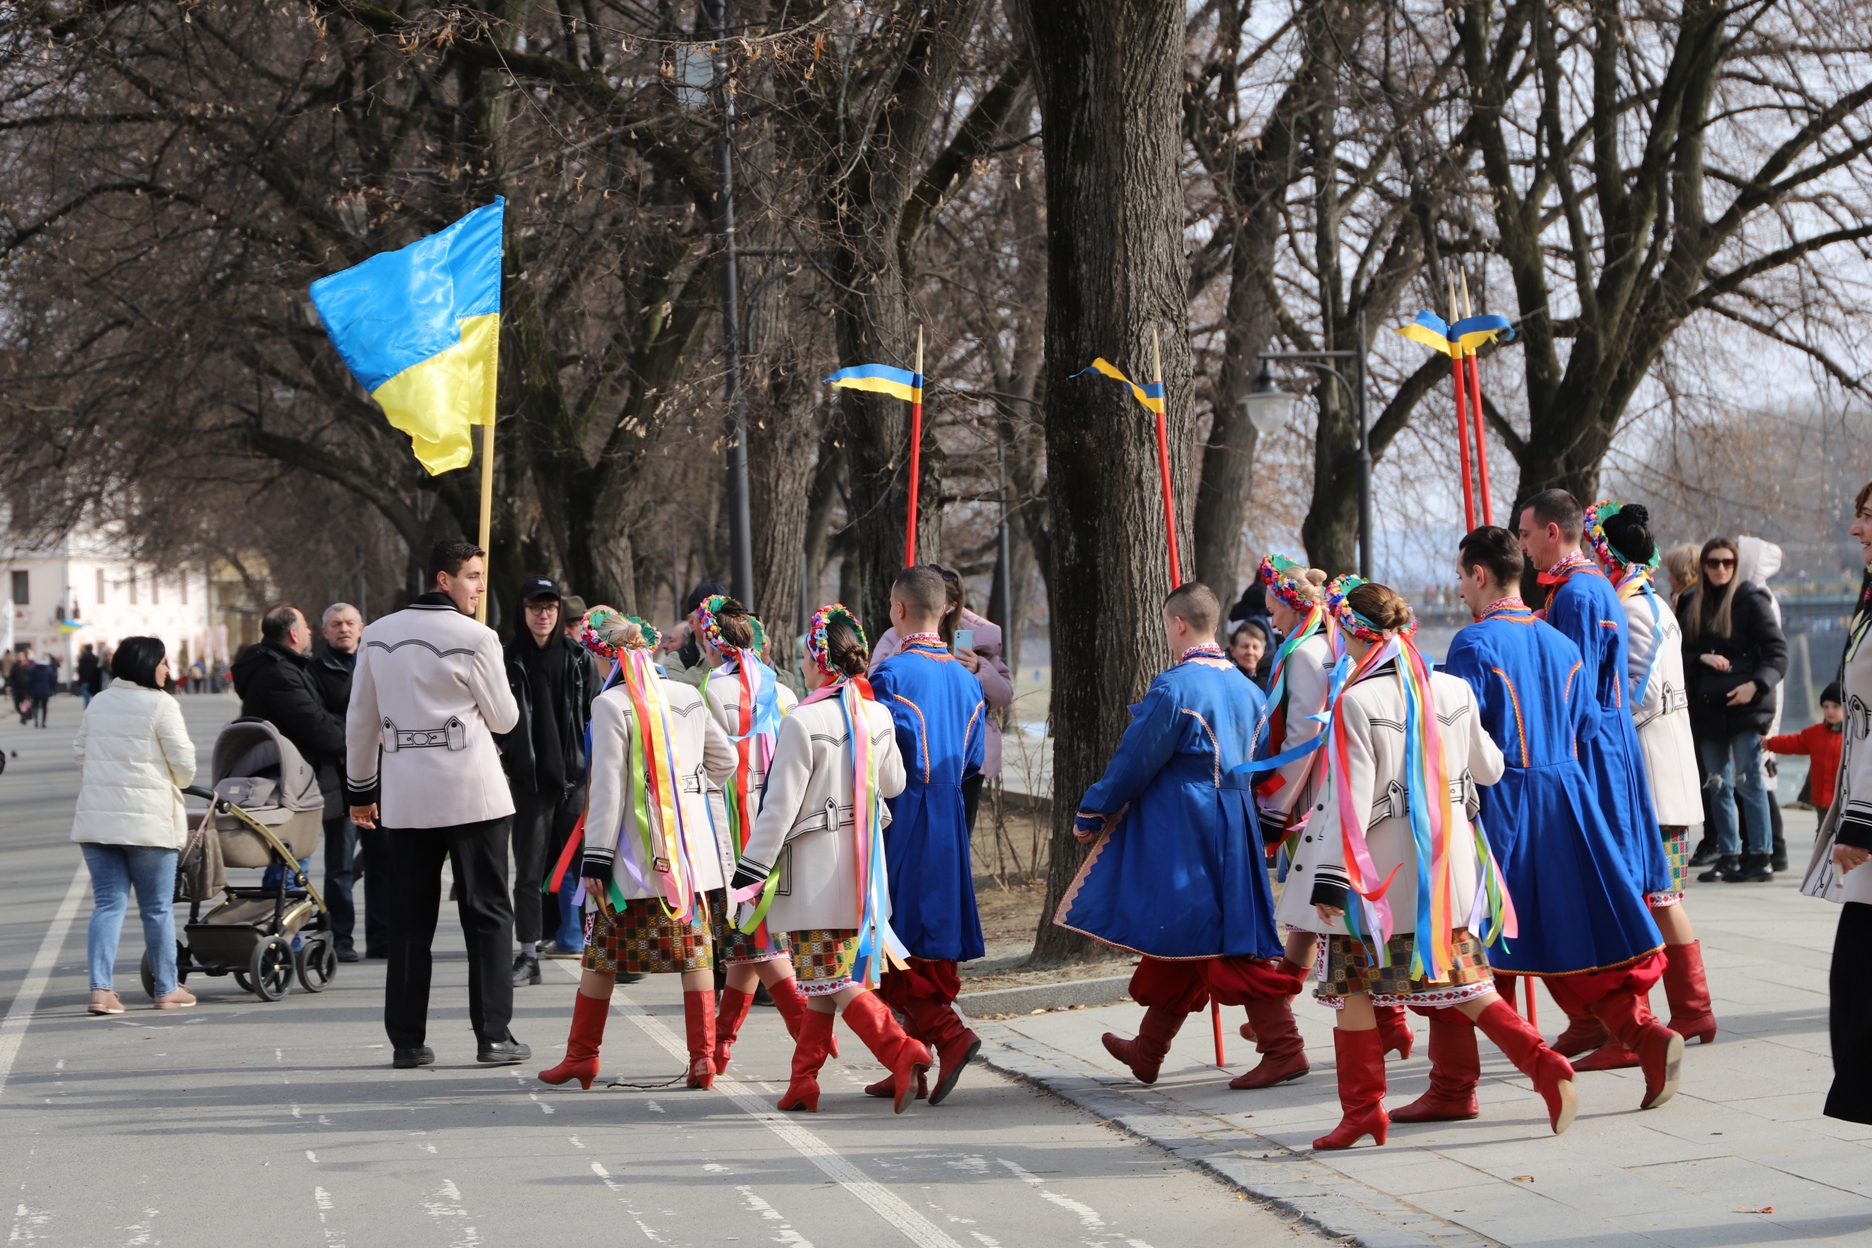 Заслуженный академический Закарпатский народный хор сегодня, в день 83-й годовщины провозглашения Карпатской Украины, исполнил несколько композиций у памятника своему президенту – Августину Волошину.